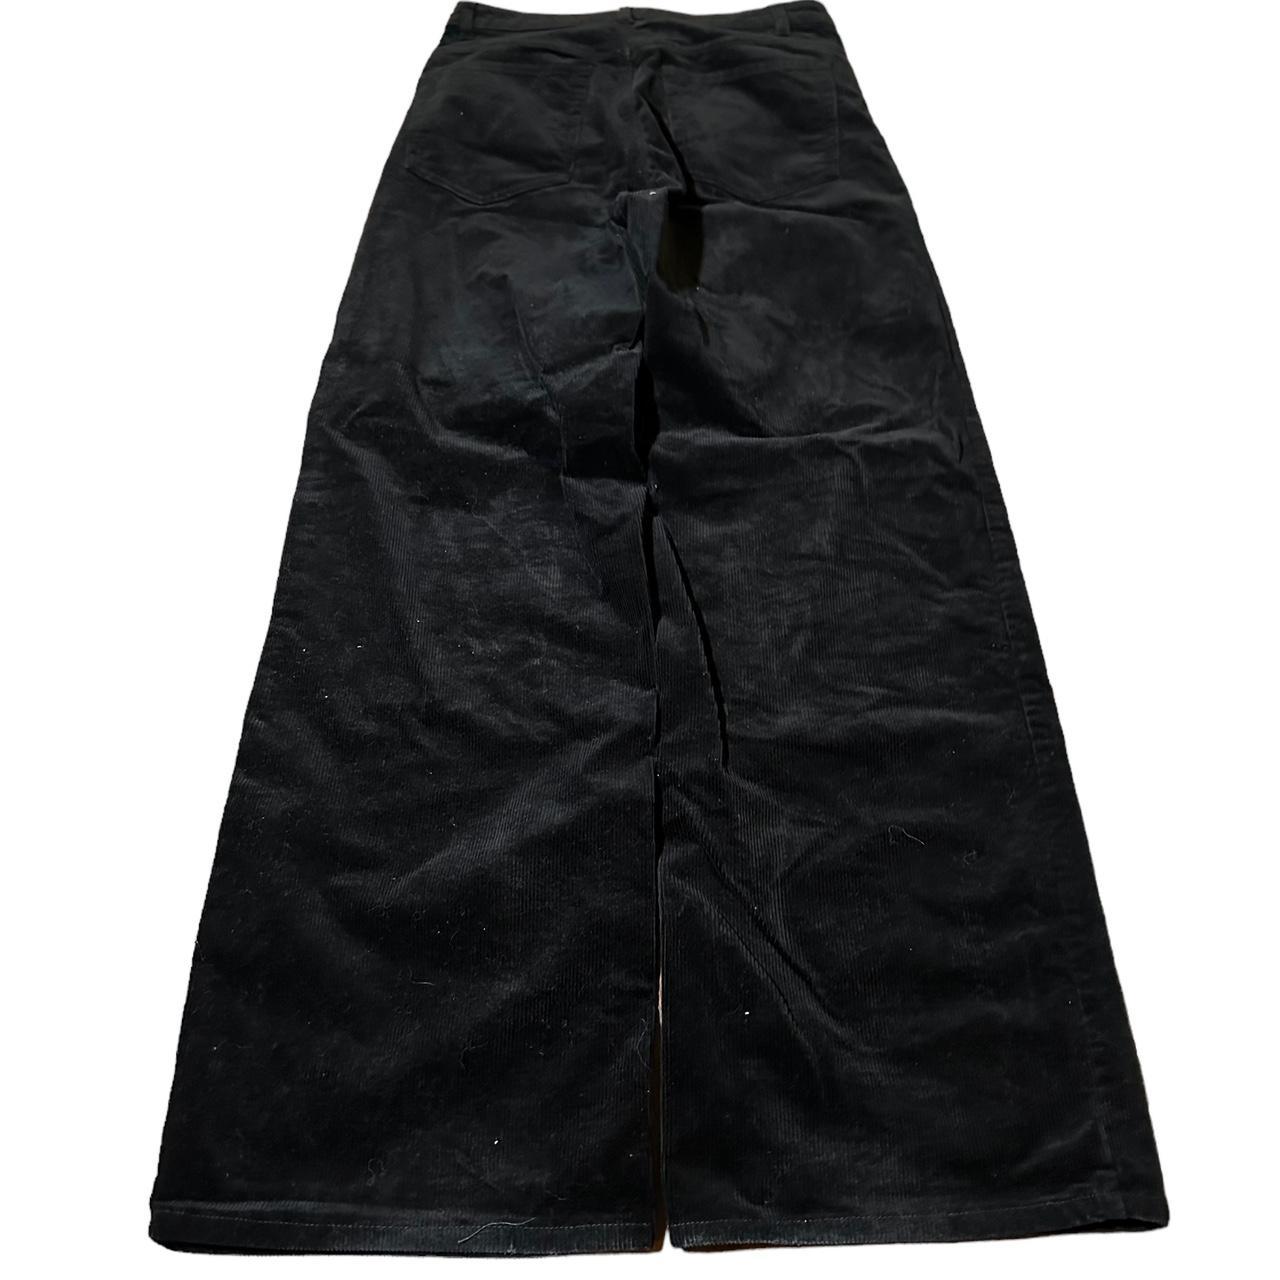 H&M Wide Leg Corduroy Black Pants Size 28x32 - 11”... - Depop